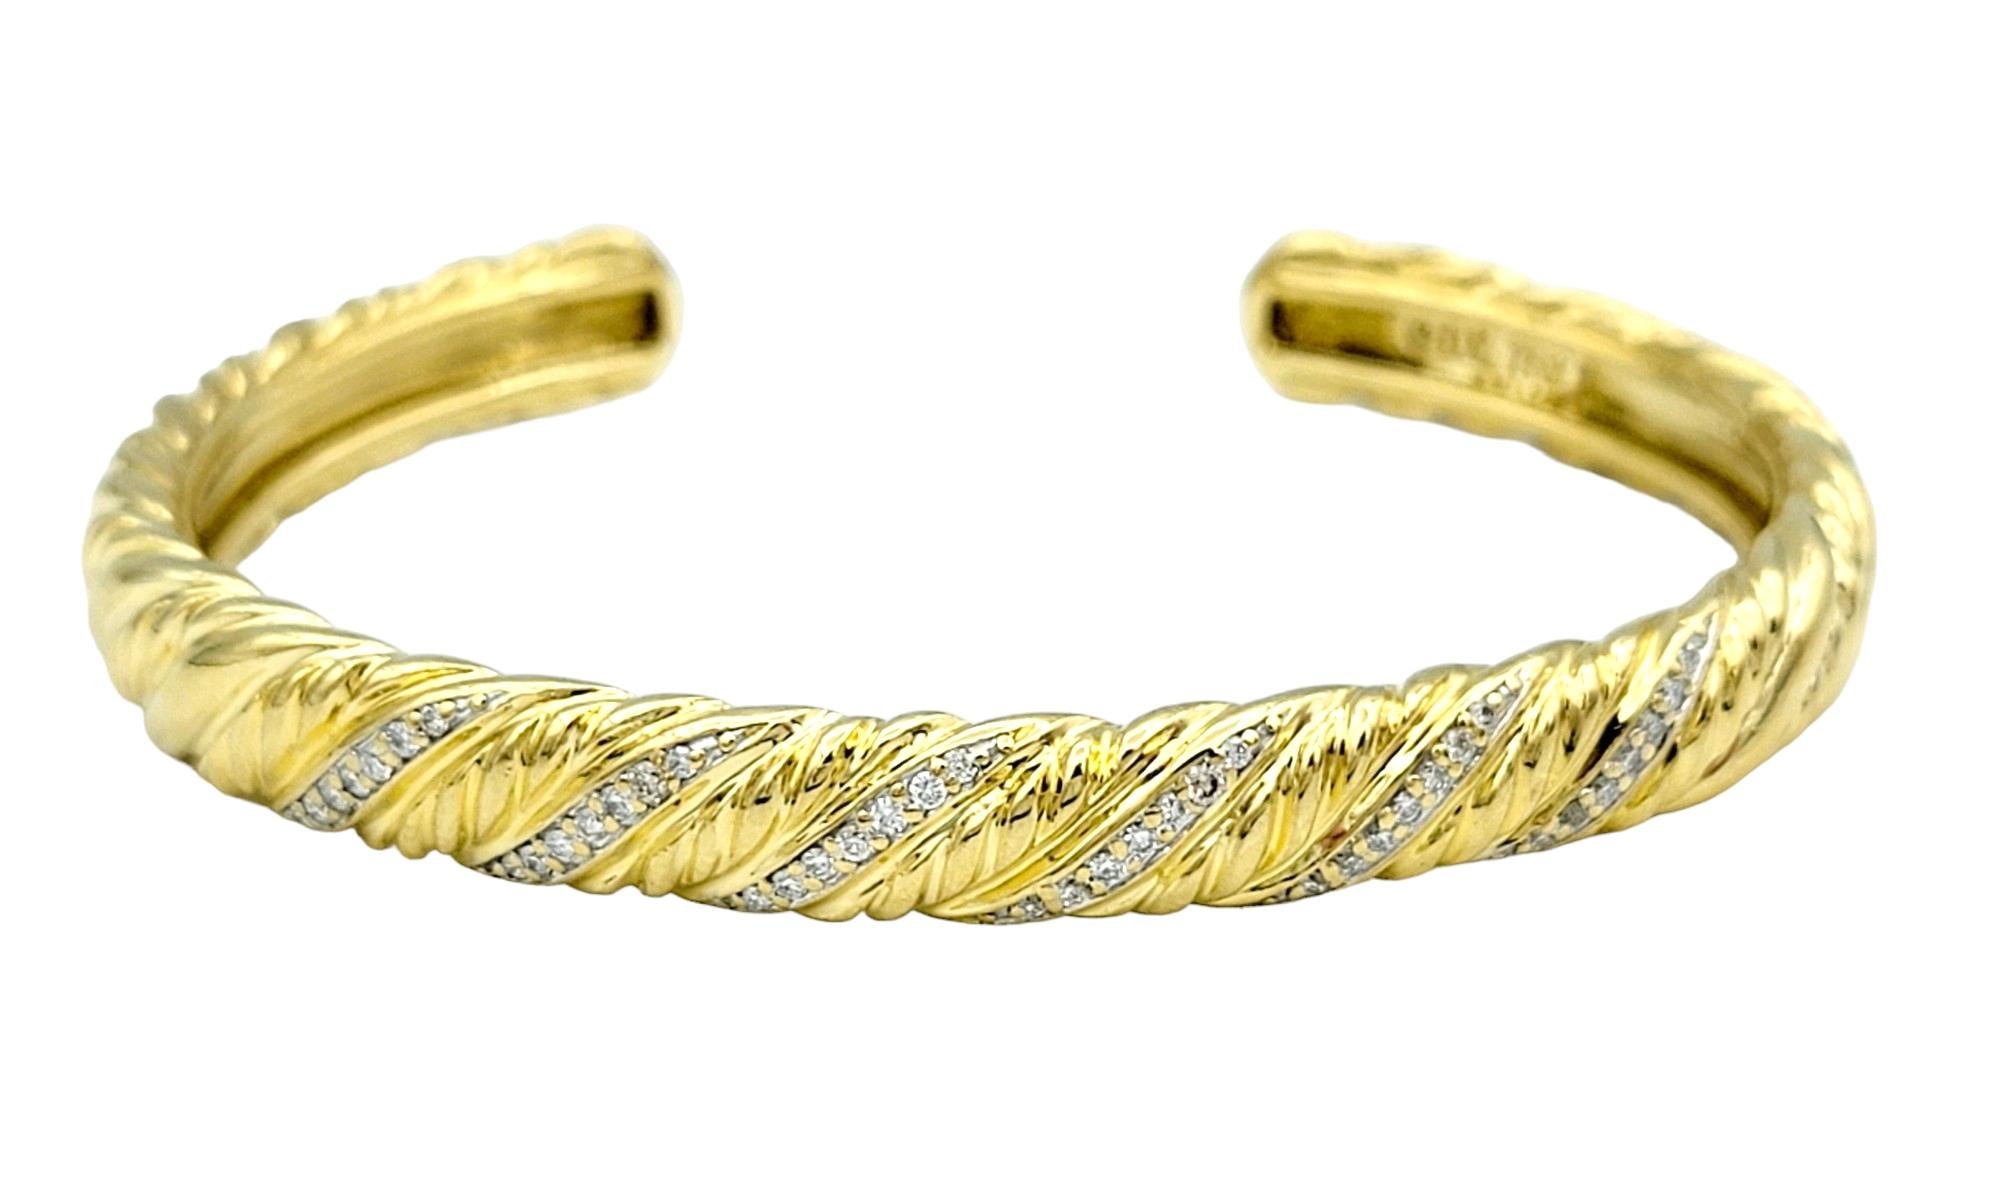 Dieser atemberaubende David Yurman Diamant-Armreif aus strahlendem 18-karätigem Gelbgold ist ein beeindruckendes Zeugnis für den unverwechselbaren Stil und die exquisite Handwerkskunst der Marke. Mit seinem gedrehten Design strahlt das Armband einen